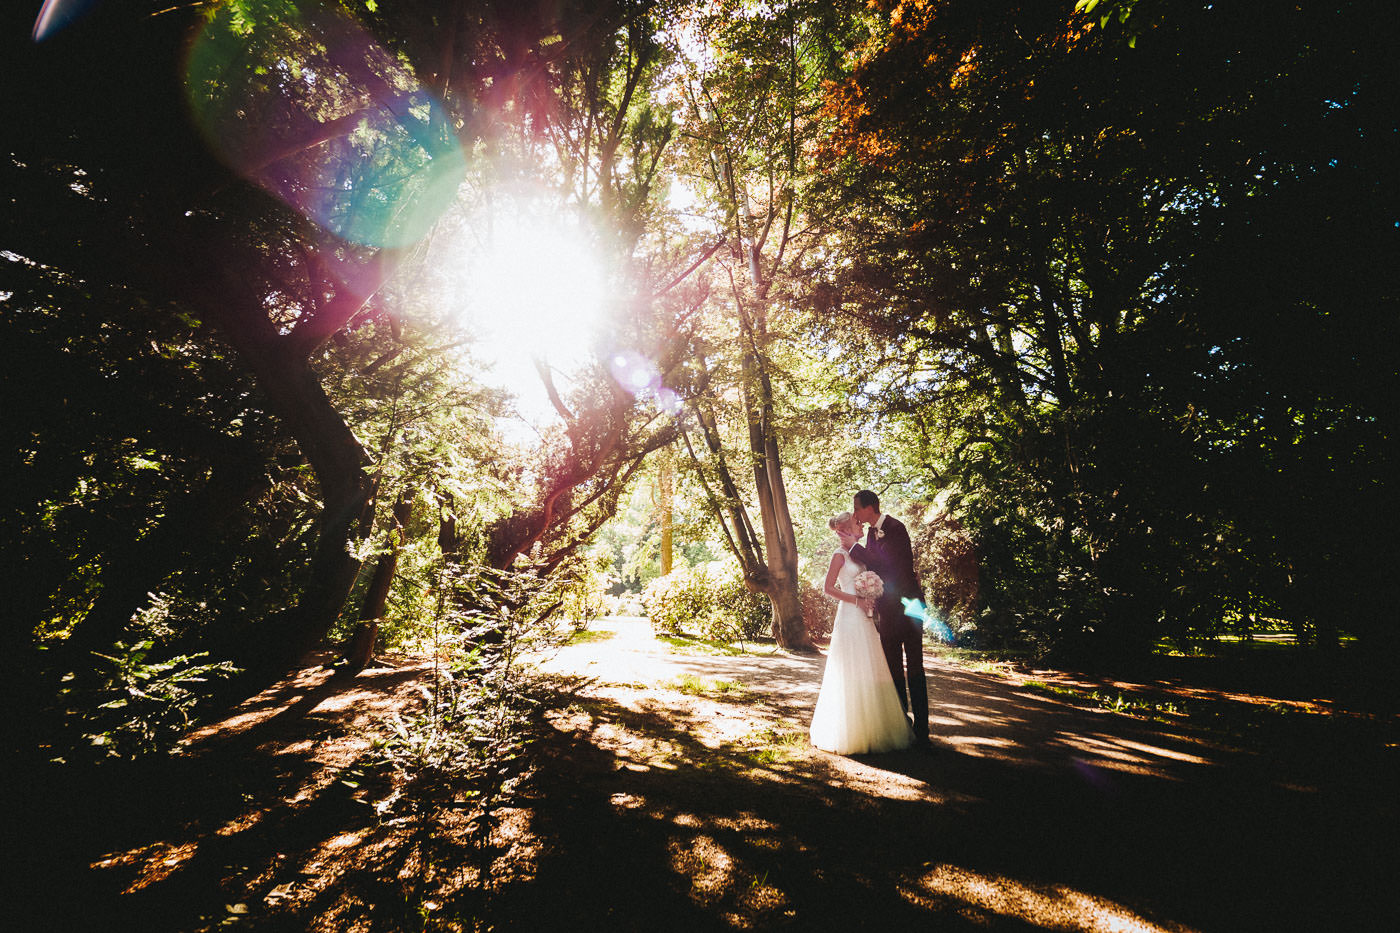 Brautpaar im Gegenlicht unter den Bäumen im Kurpark von Bad Homburg